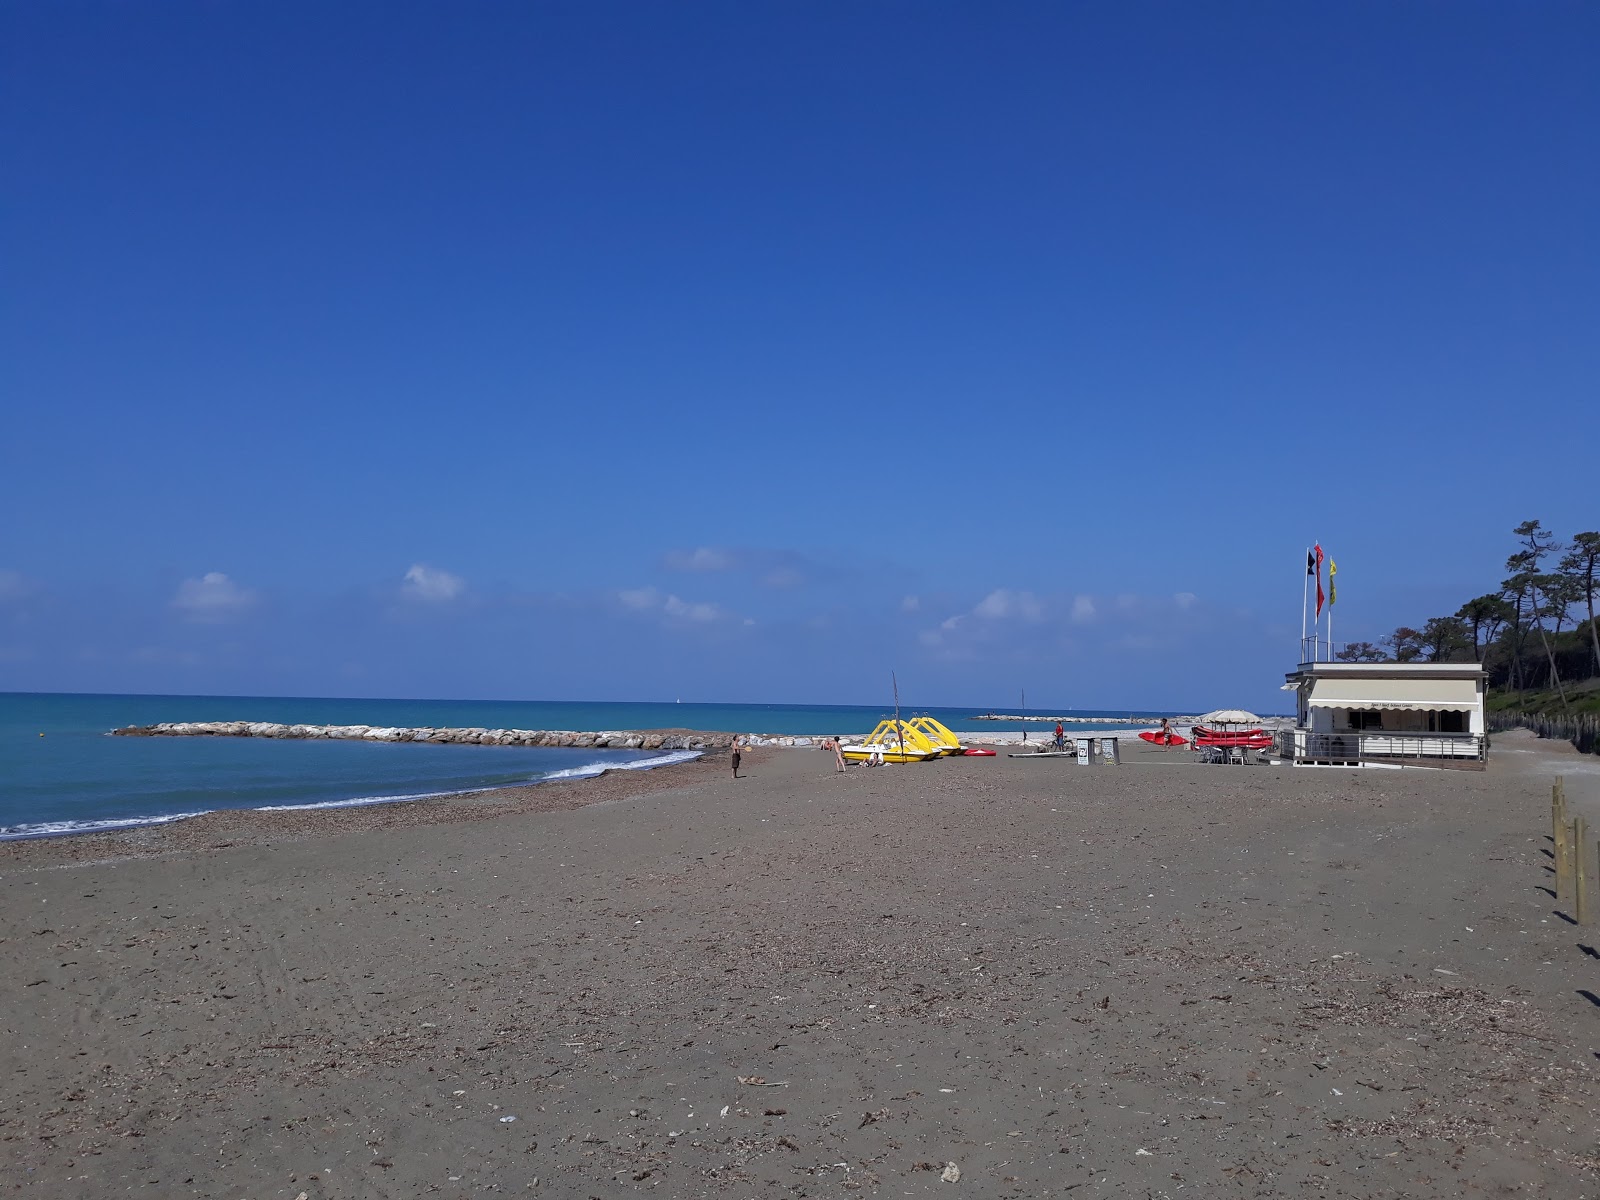 Zdjęcie Bau beach z poziomem czystości głoska bezdźwięczna